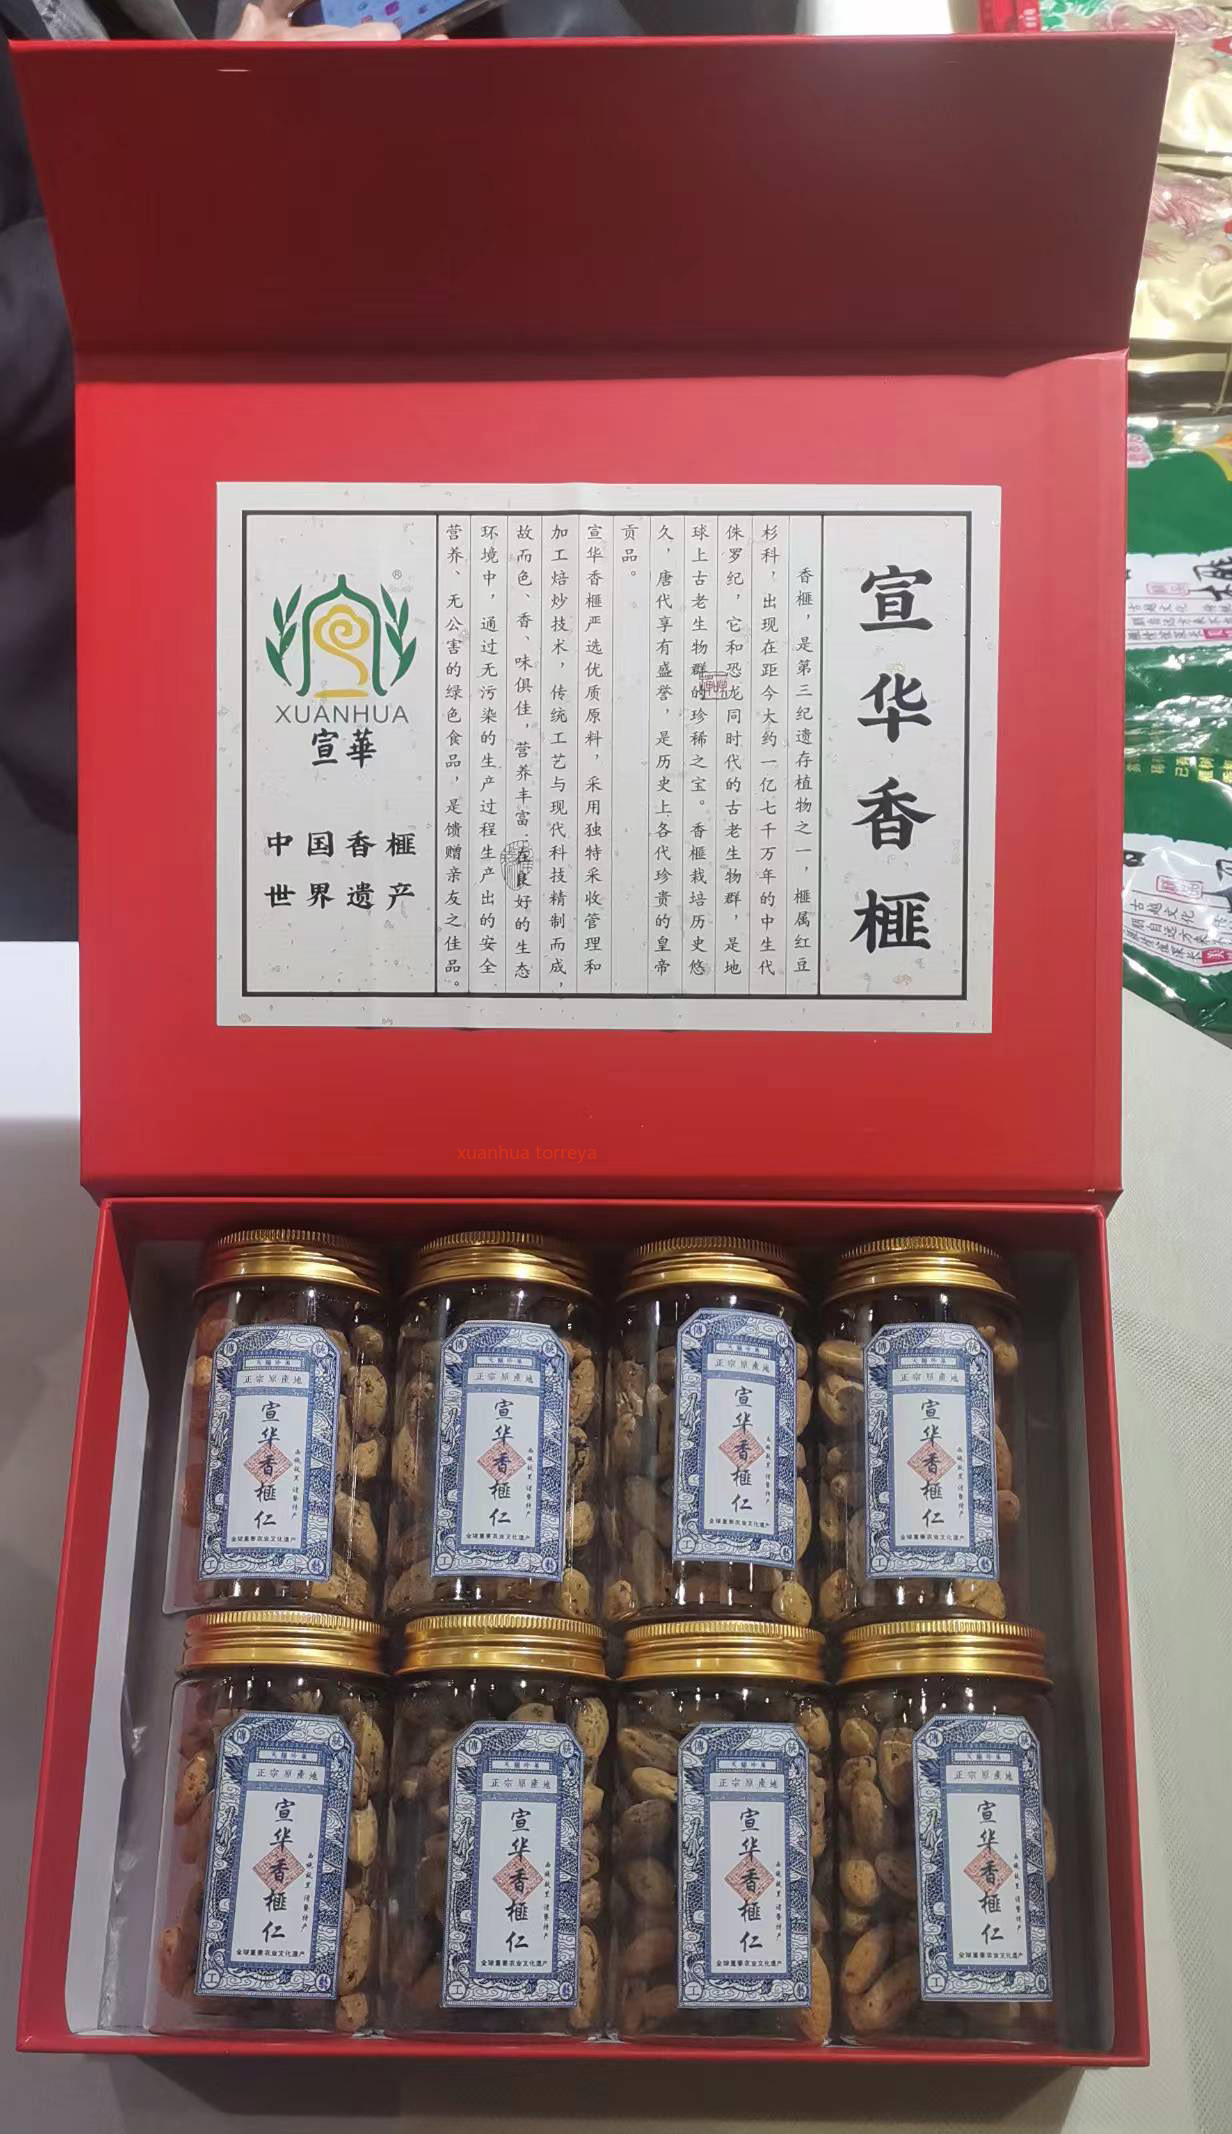 【宣华香榧】产自全球重要农业文化遗产 红礼盒罐装香榧仁